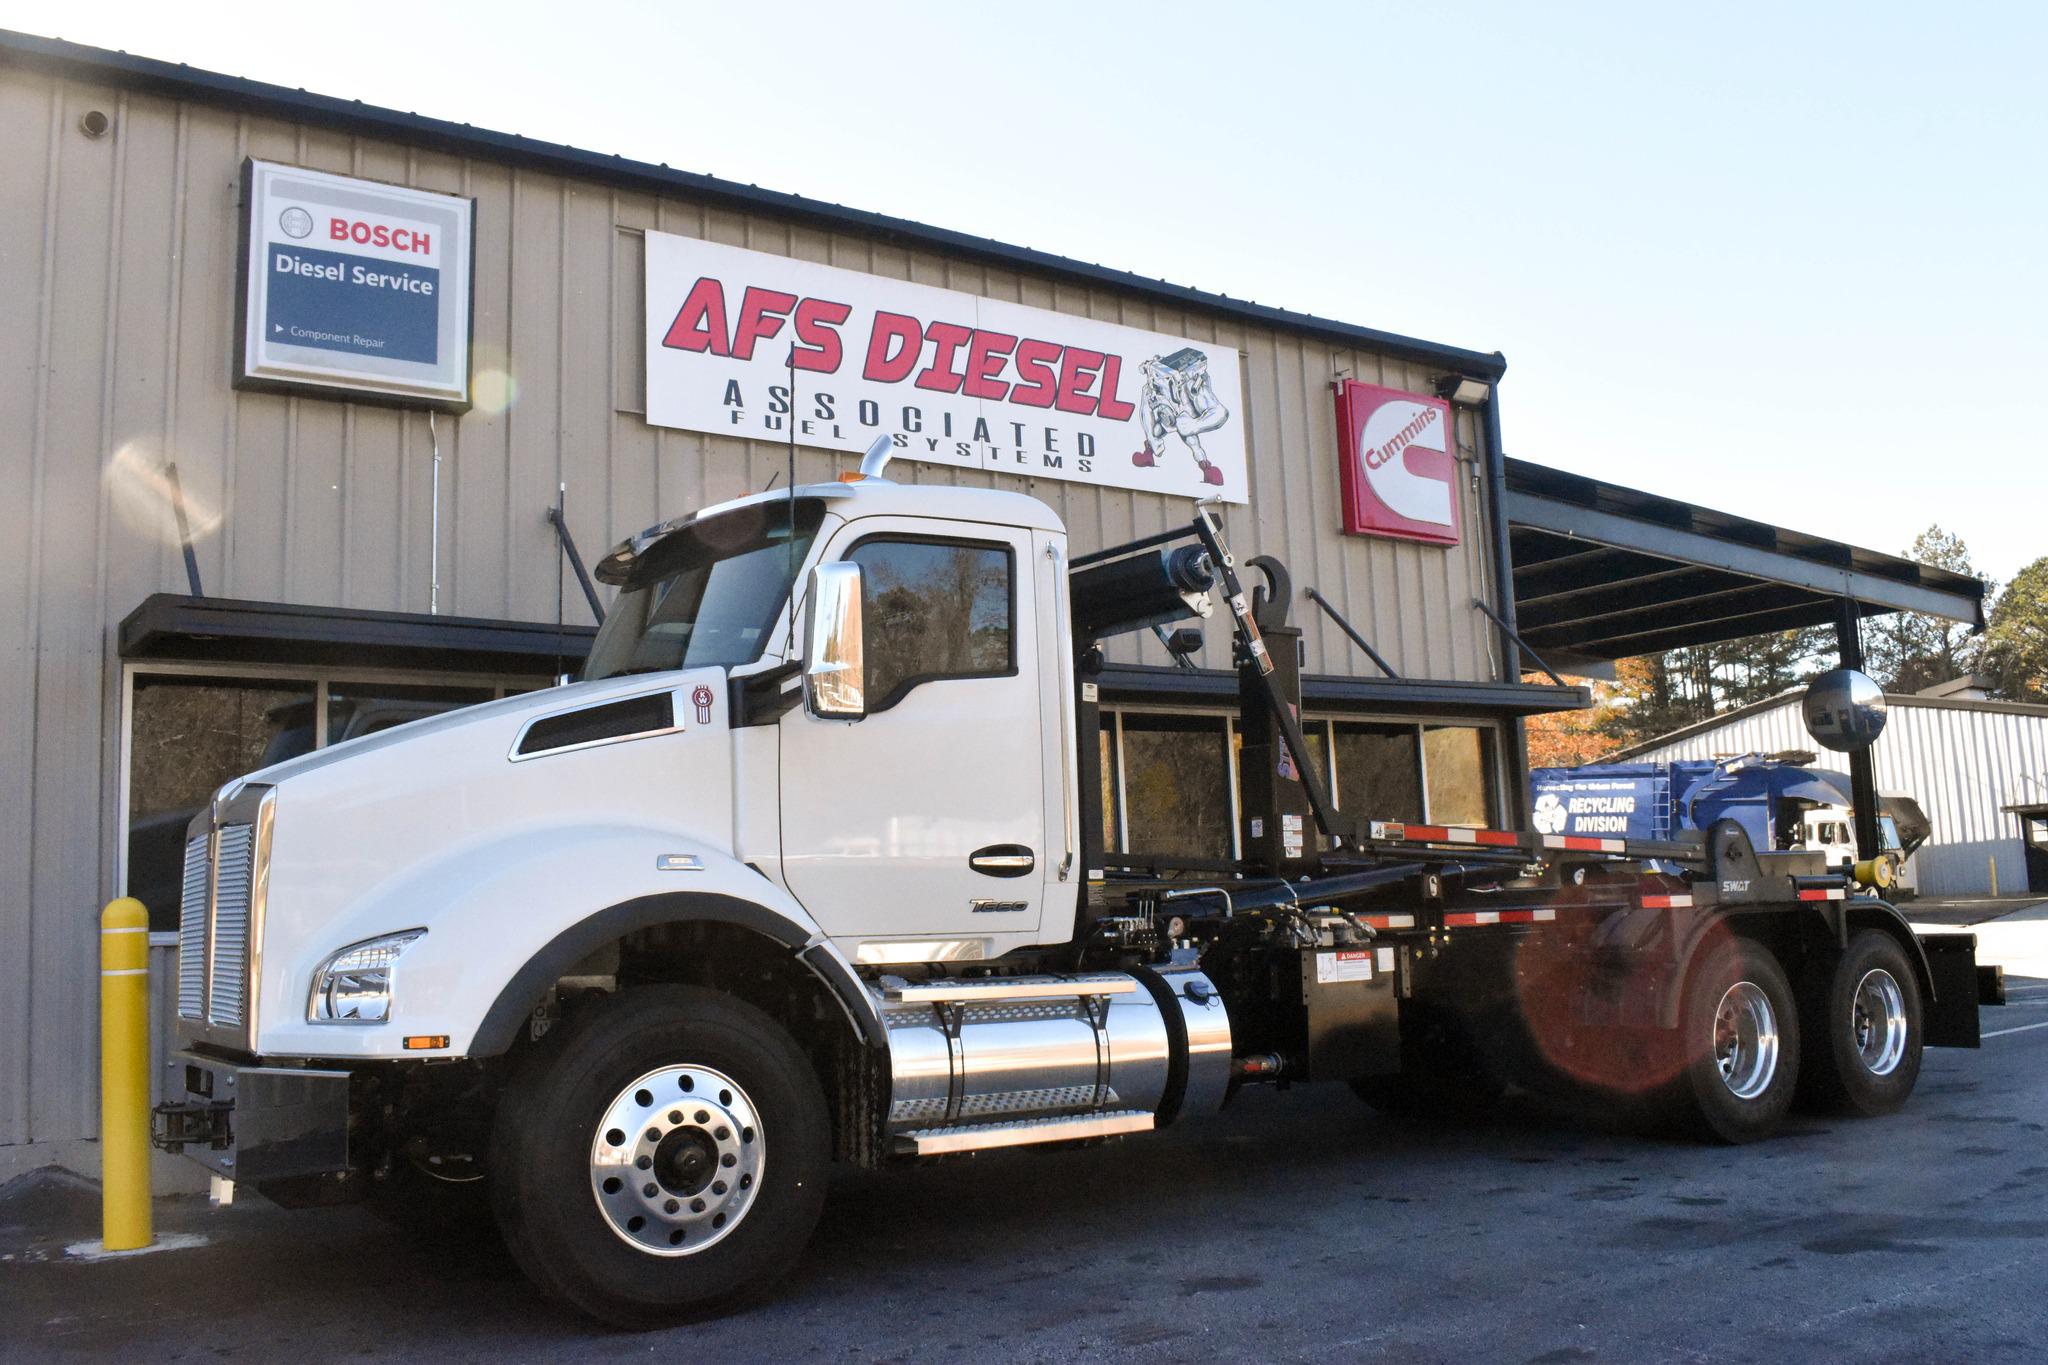 AFS DIESEL Truck & Body Conley (404)596-4395